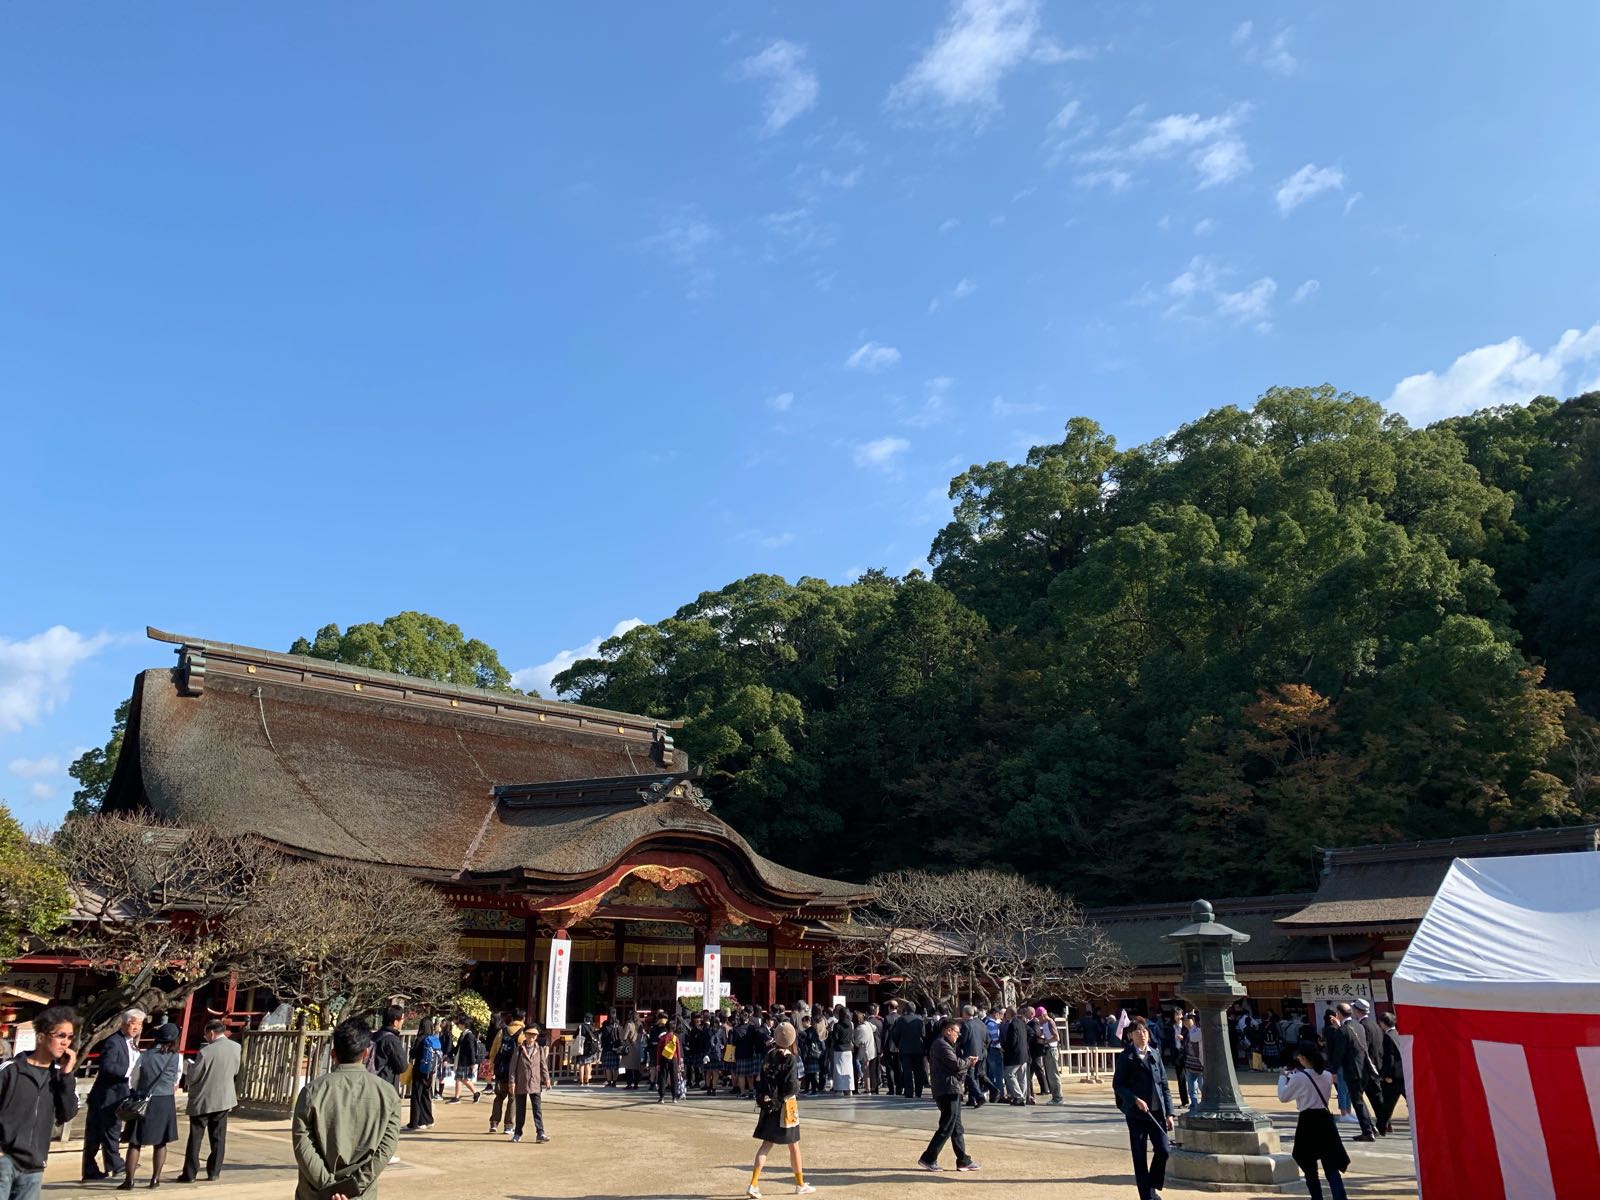 天满宫两个总本社之一，虽然规模及人流均不及京都的北野天满宫，仍旧是值得